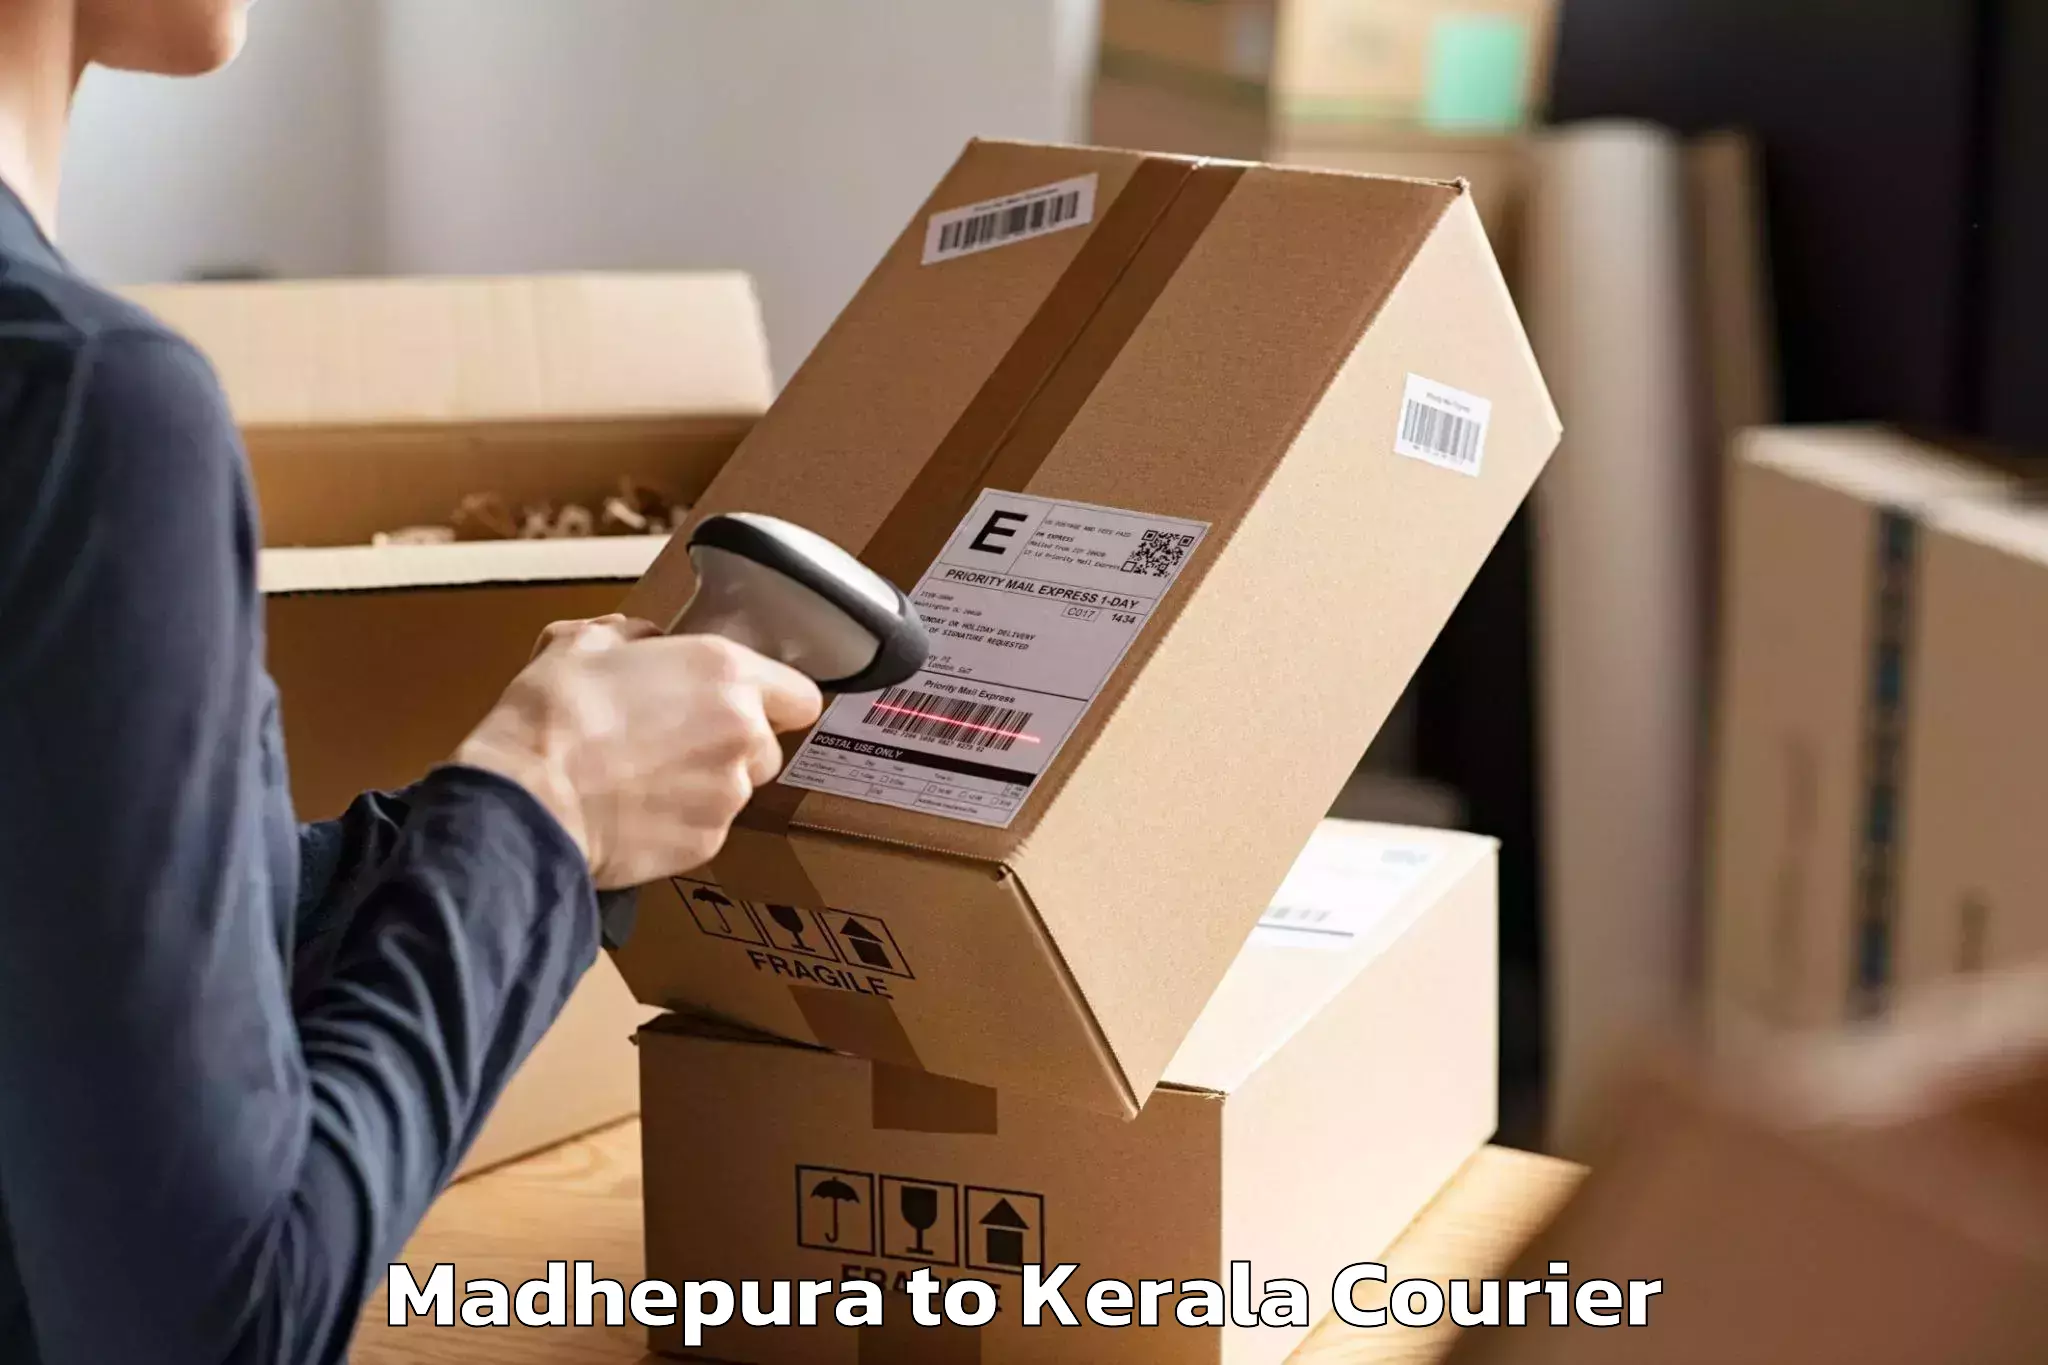 Home shifting experts Madhepura to Kerala